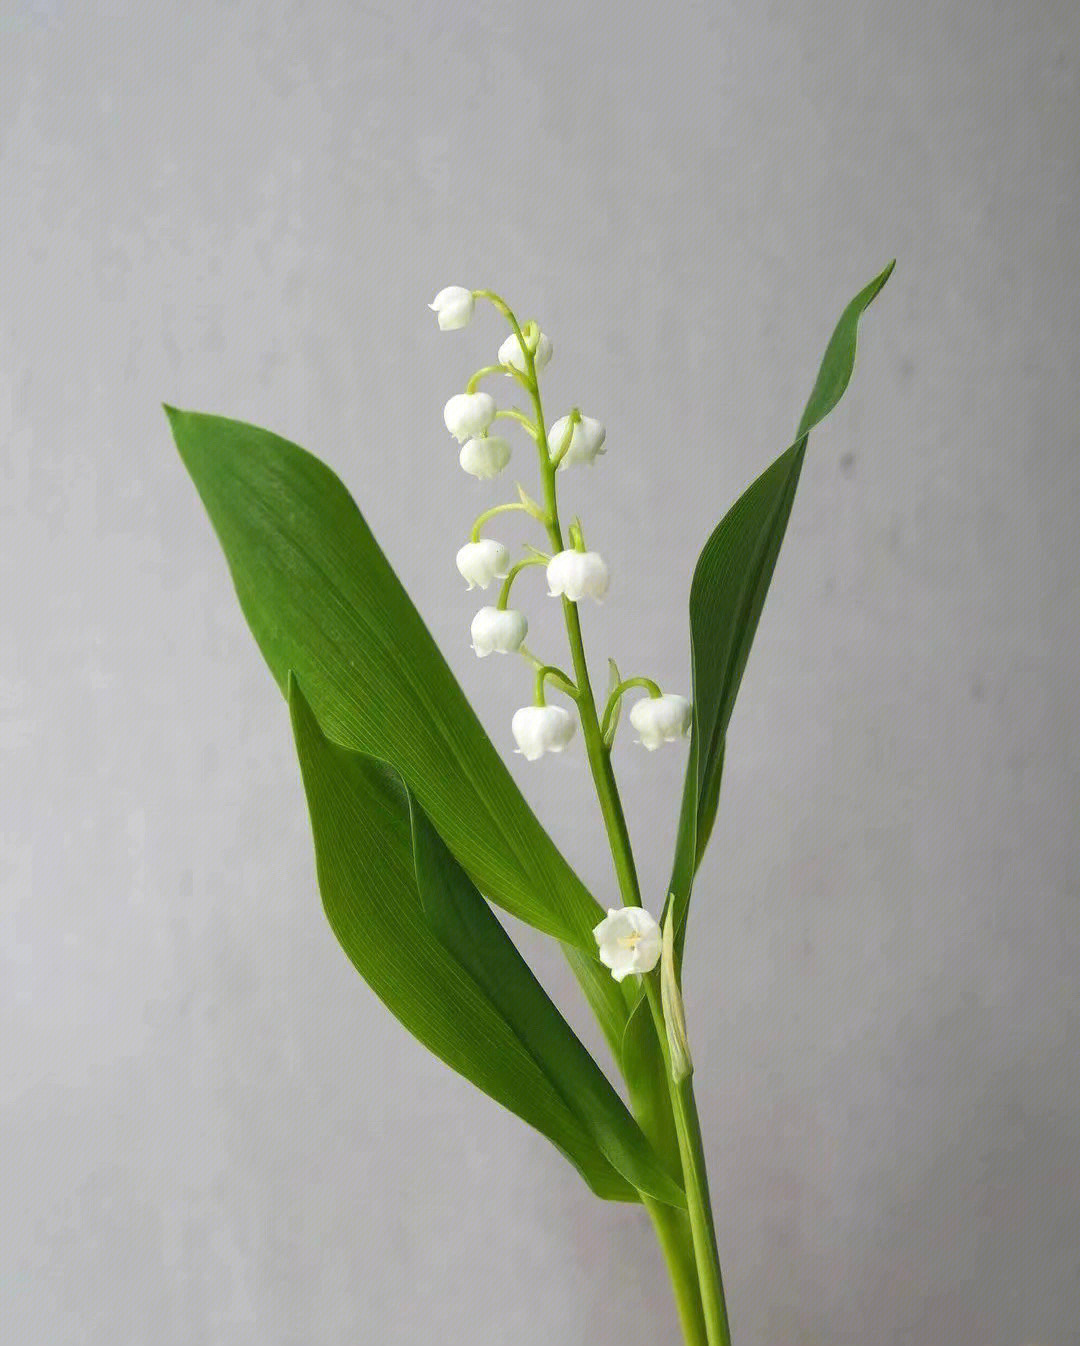 一直被认为是一种极浪漫的花朵在法国,每年5月1日是铃兰节处处卖铃兰